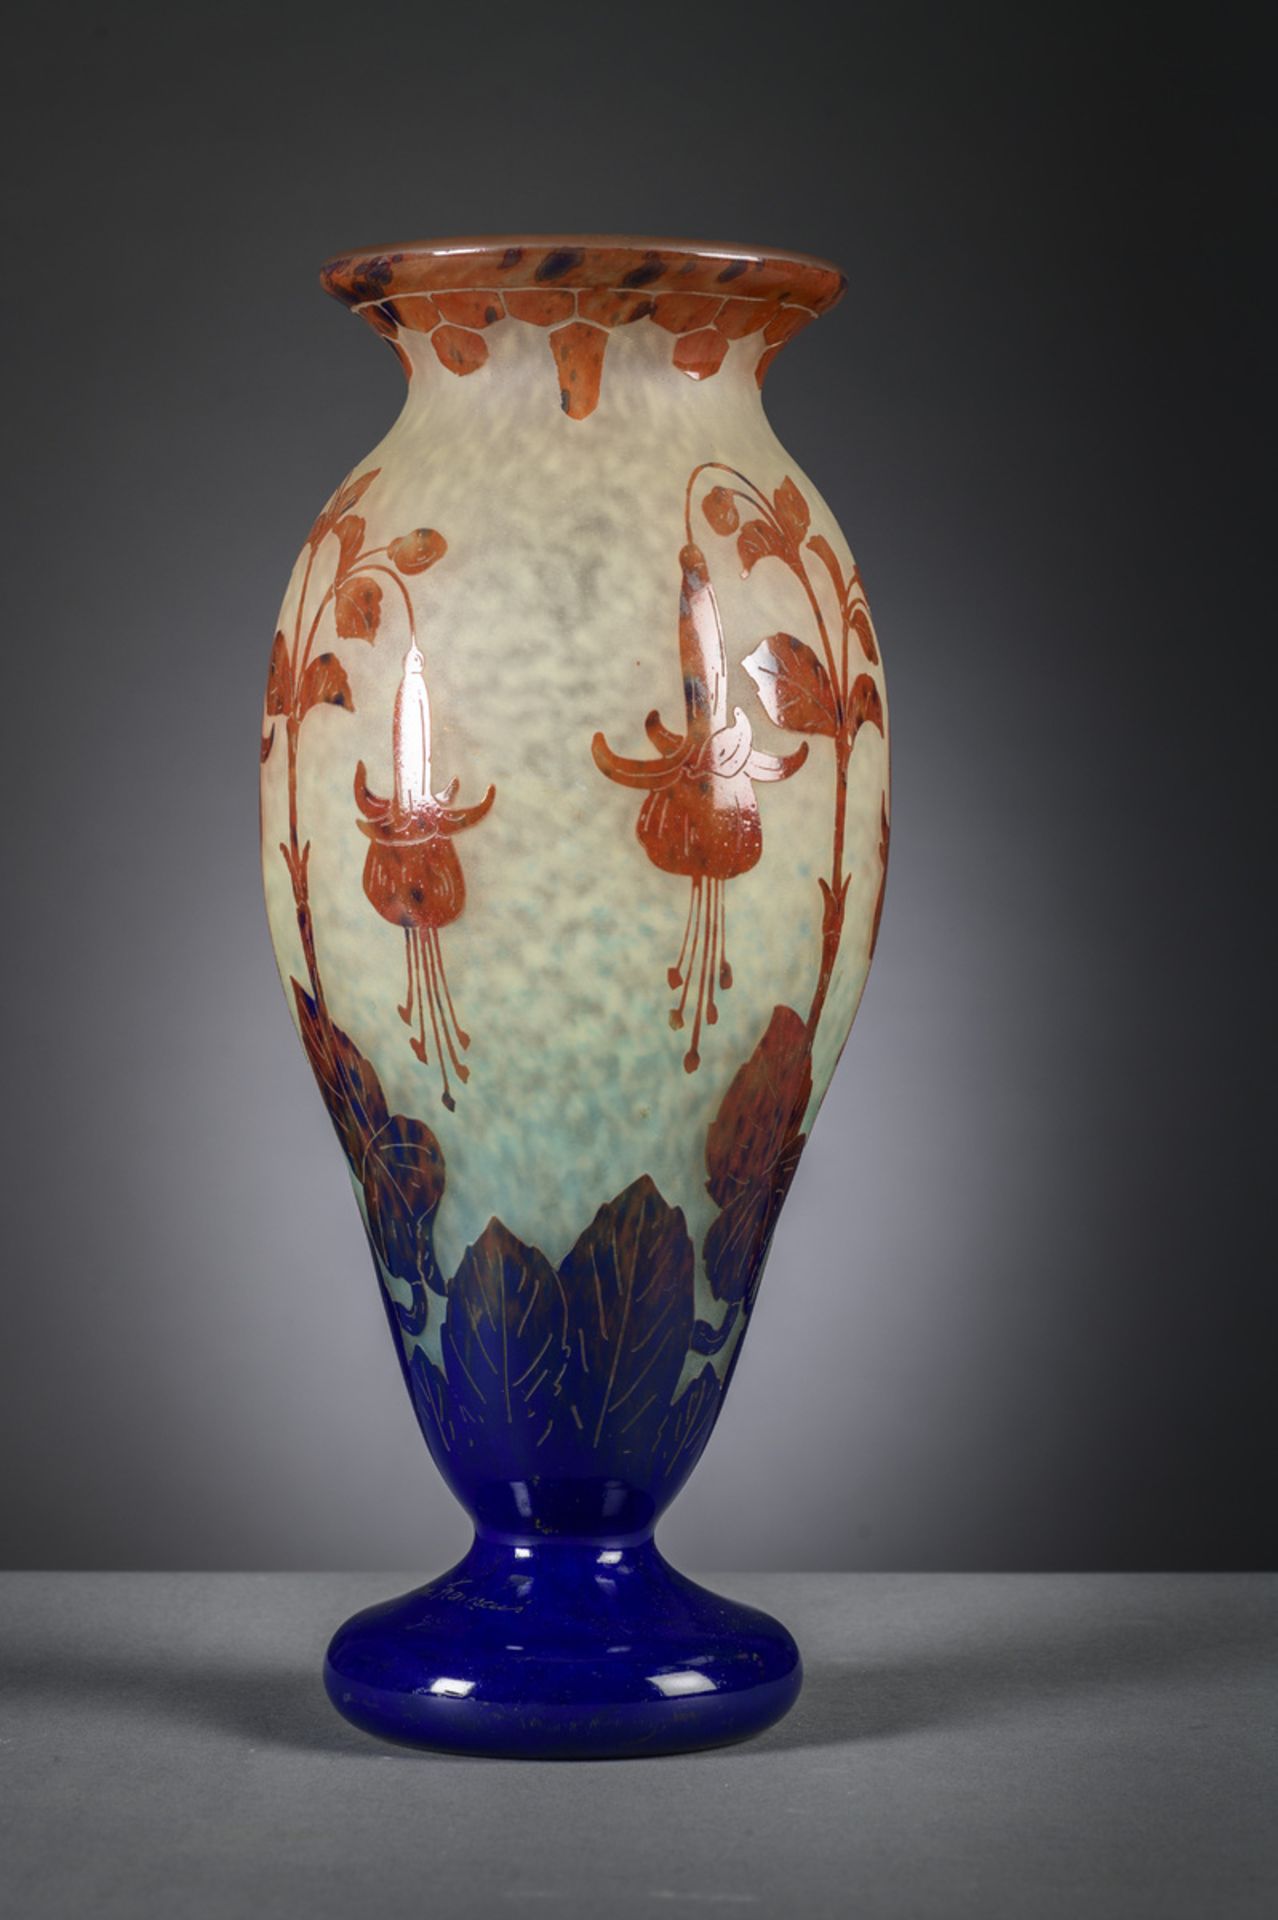 Large glass vase 'le verre Francais' with floral decoration (h45cm) - Image 3 of 4